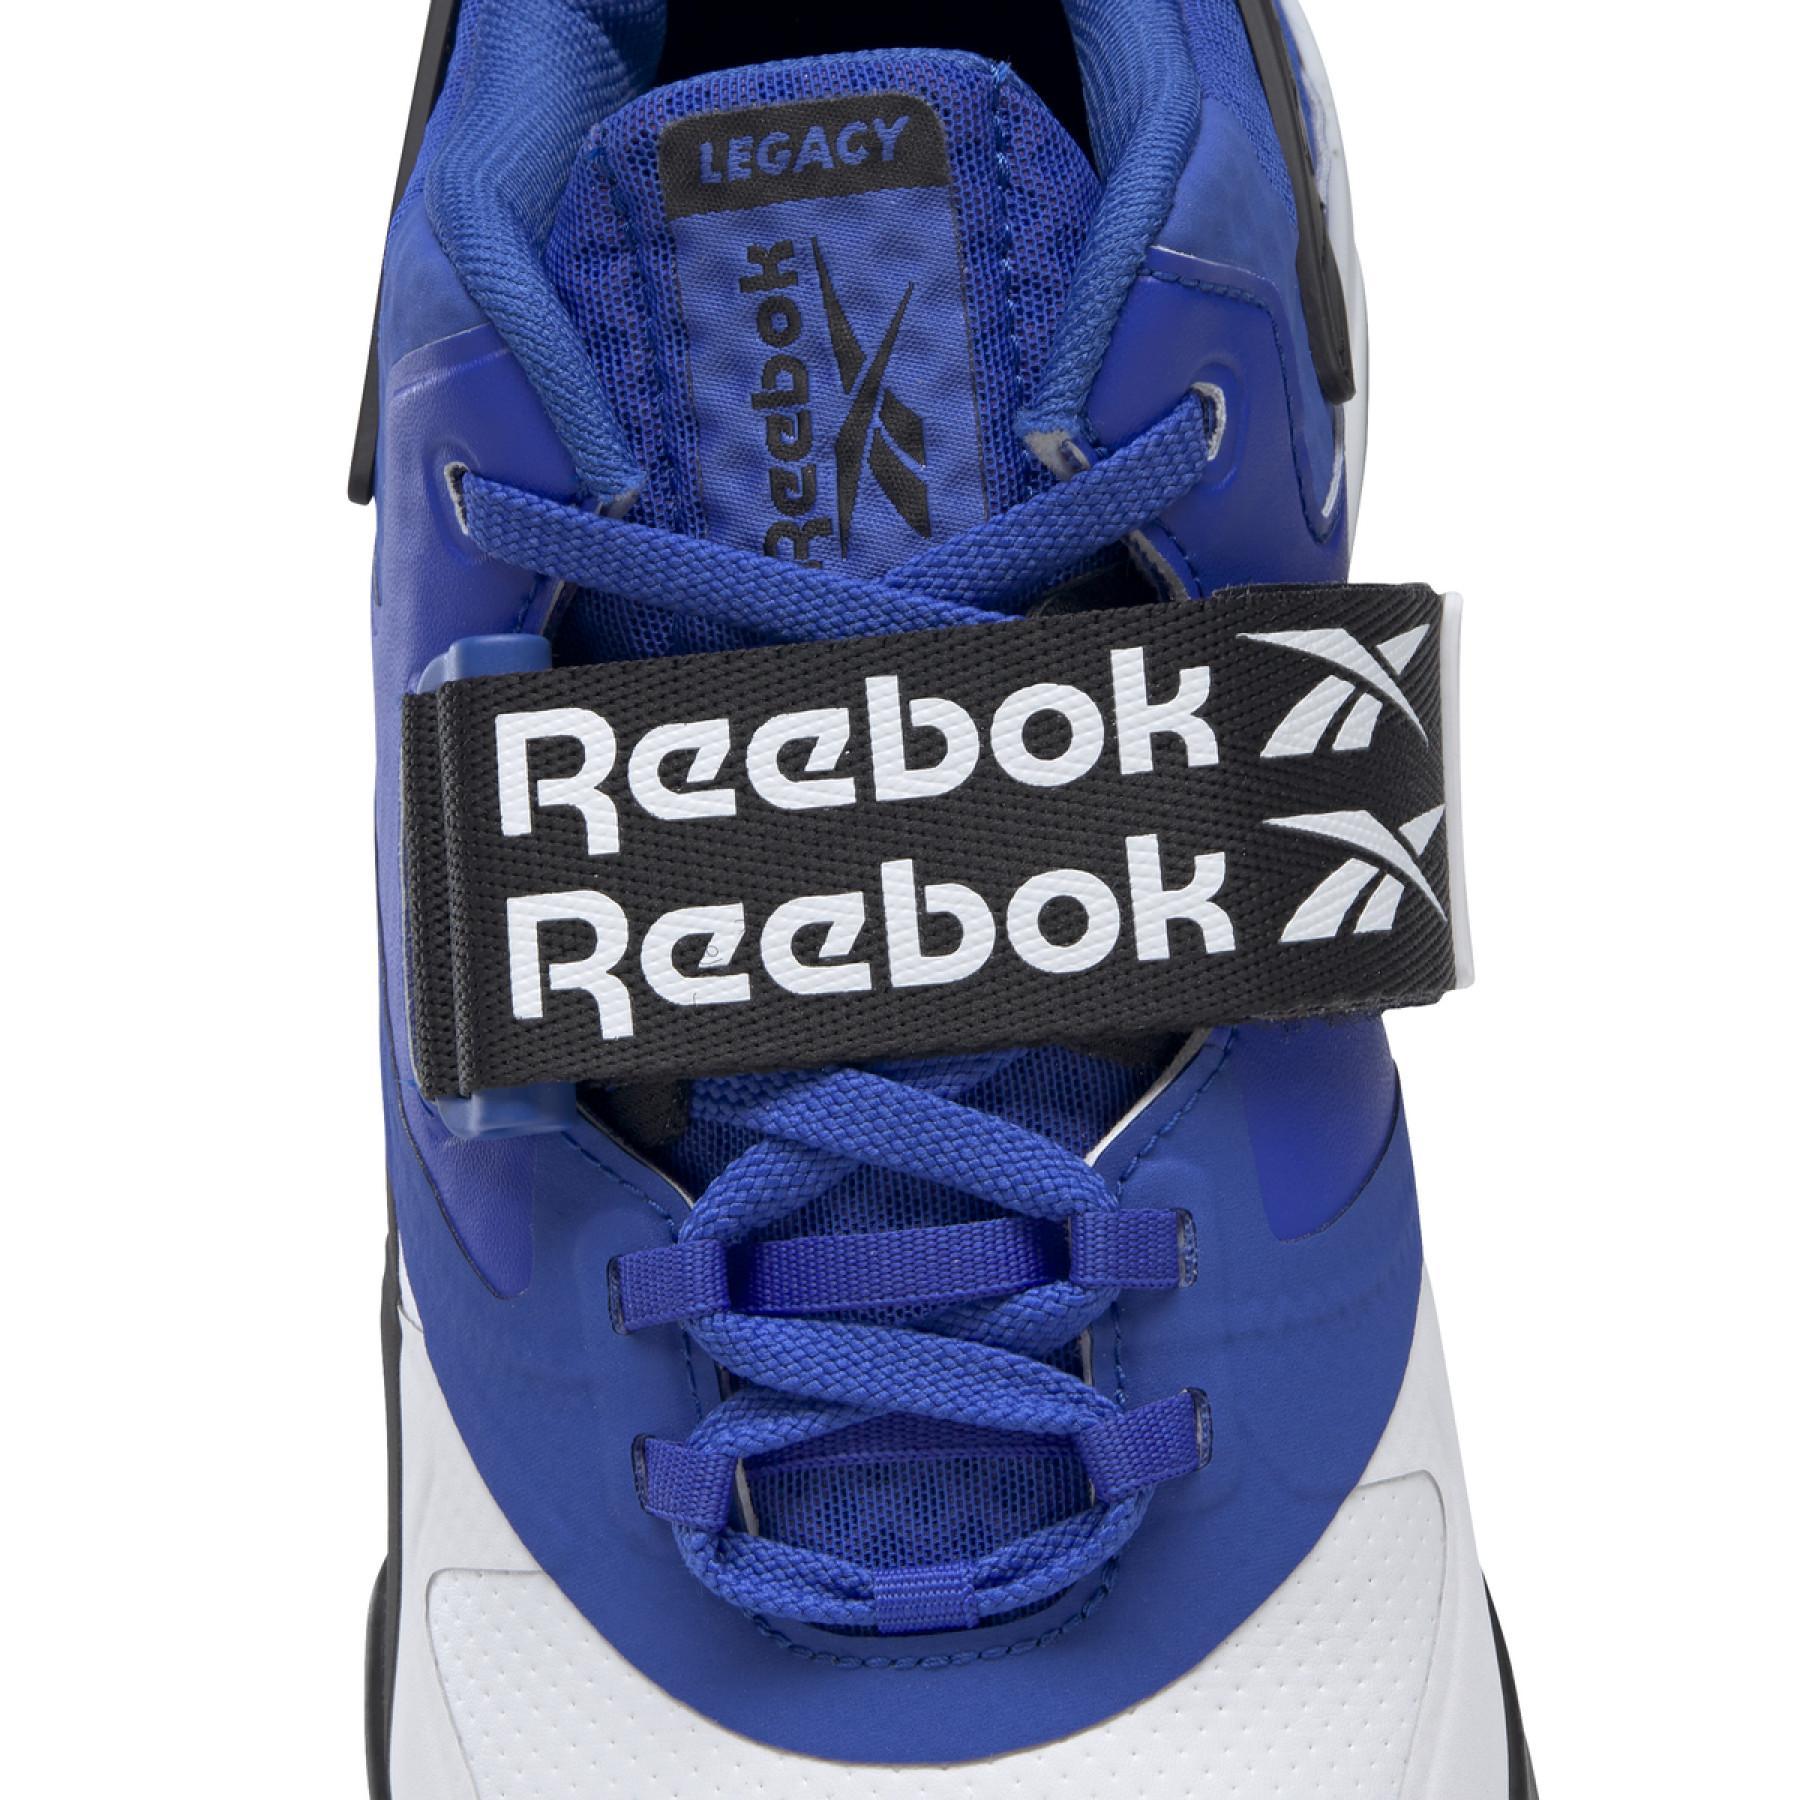 Sapatos Reebok Legacy Lifter II